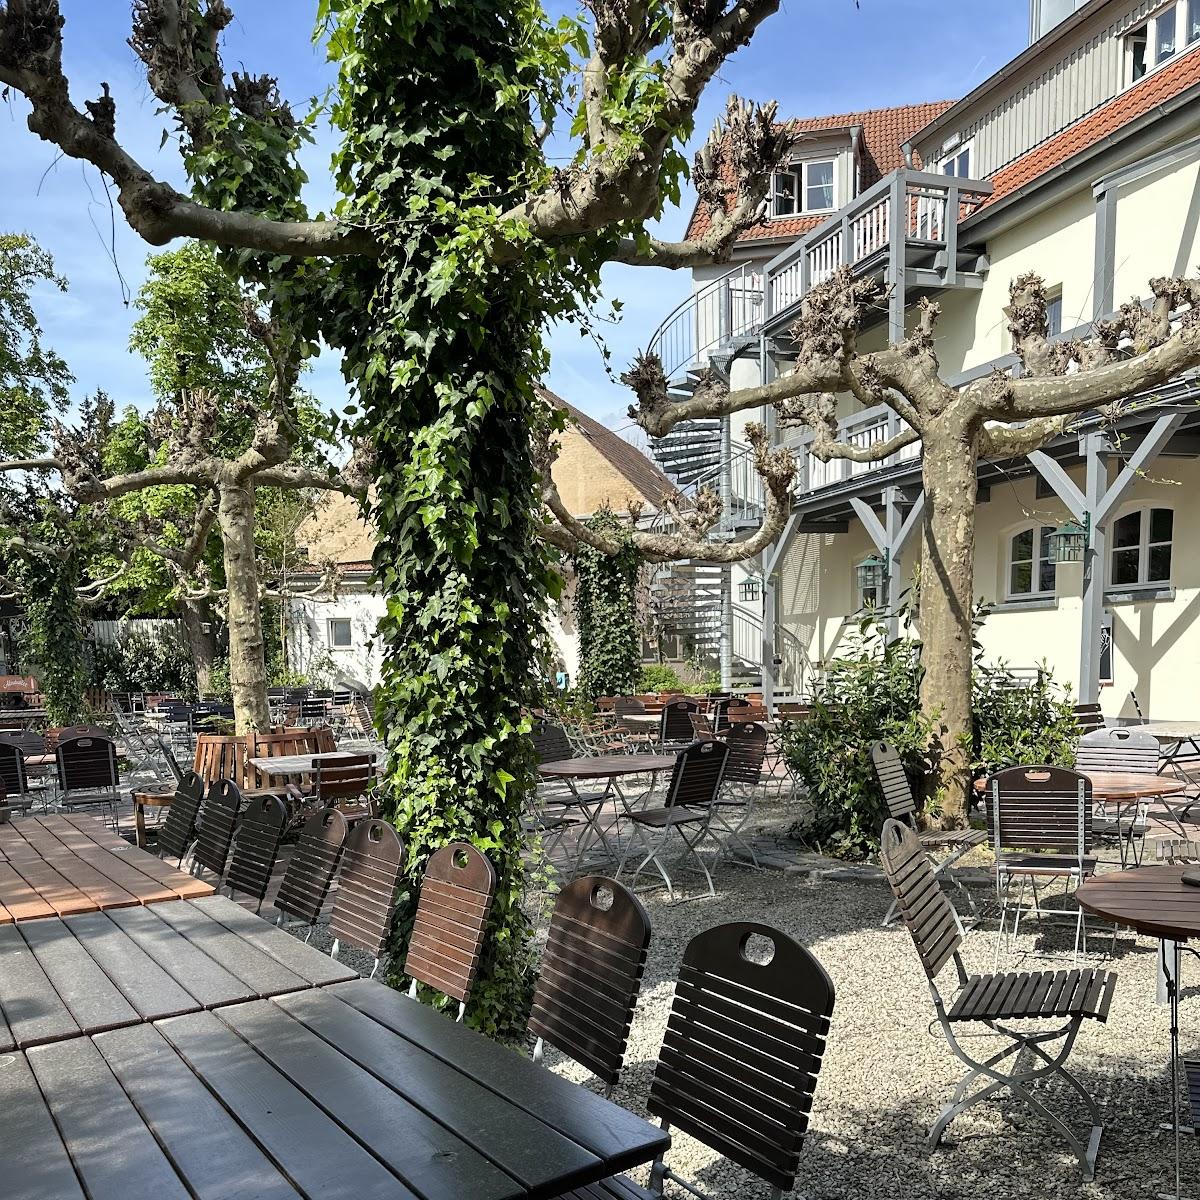 Restaurant "Landgasthaus Mutter Krauss: Traditionelle Deutsch-Hessische Küche & Großer Biergarten" in Schwalbach am Taunus